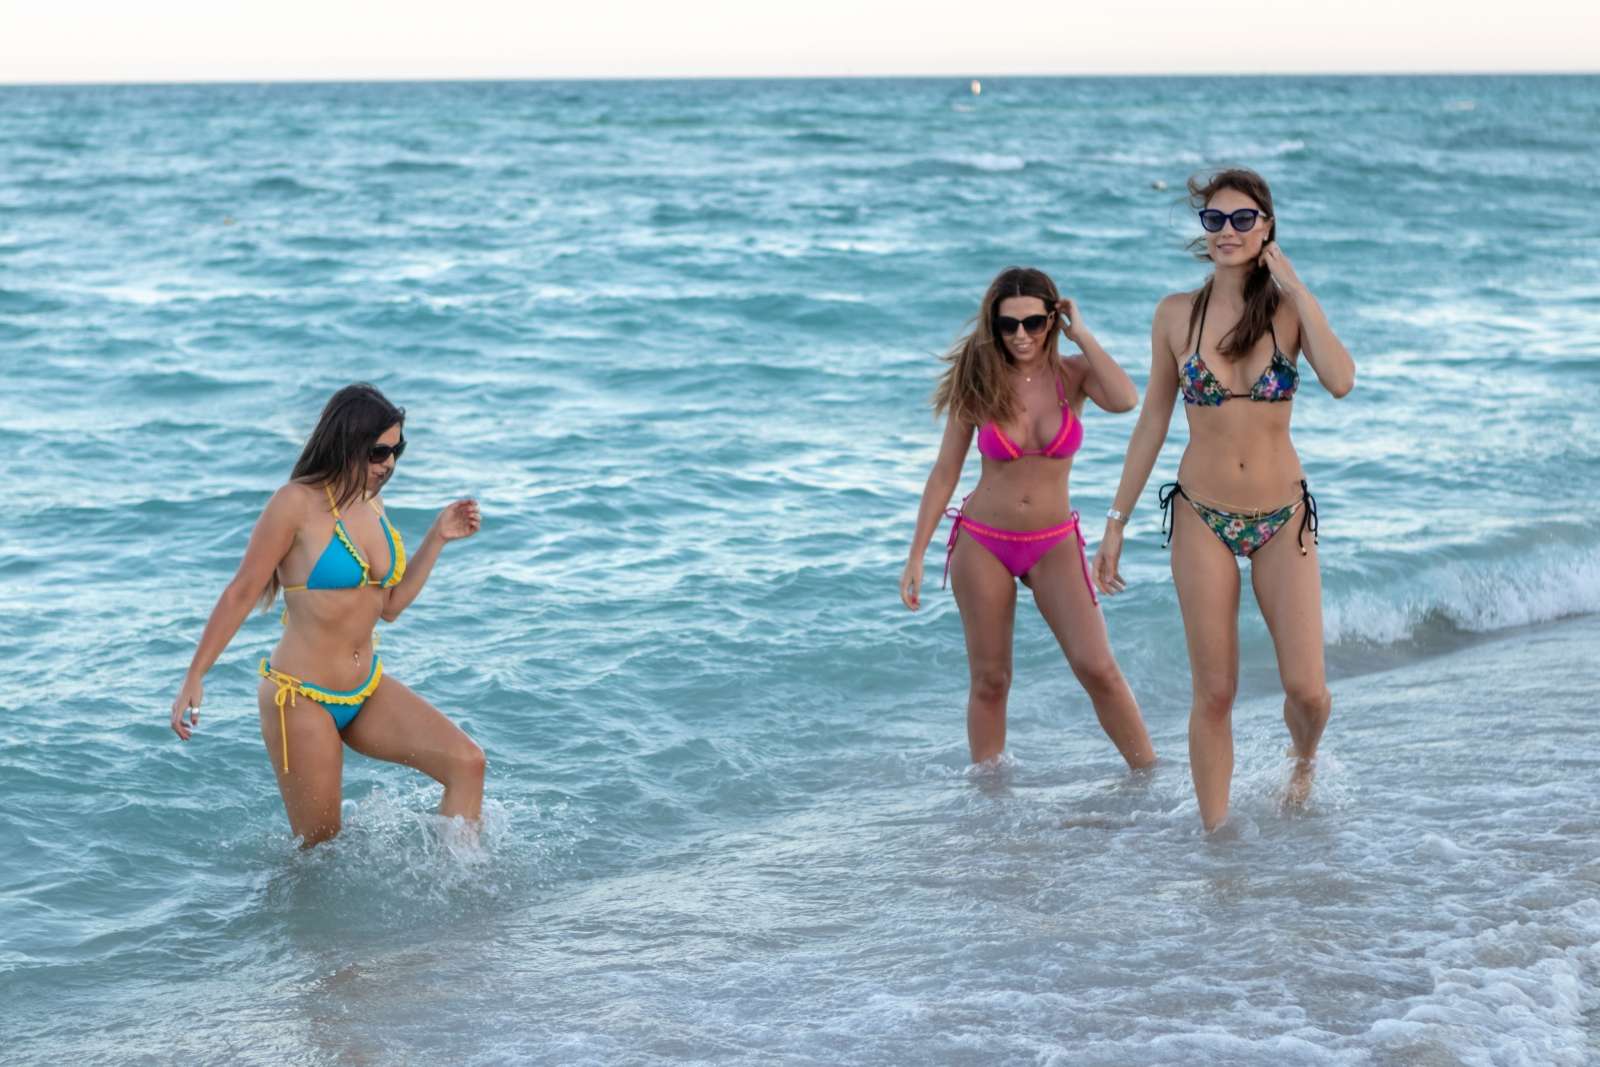 Claudia Romani, Julia Pereira and Laura Bragato in Bikini at a beach in Miami